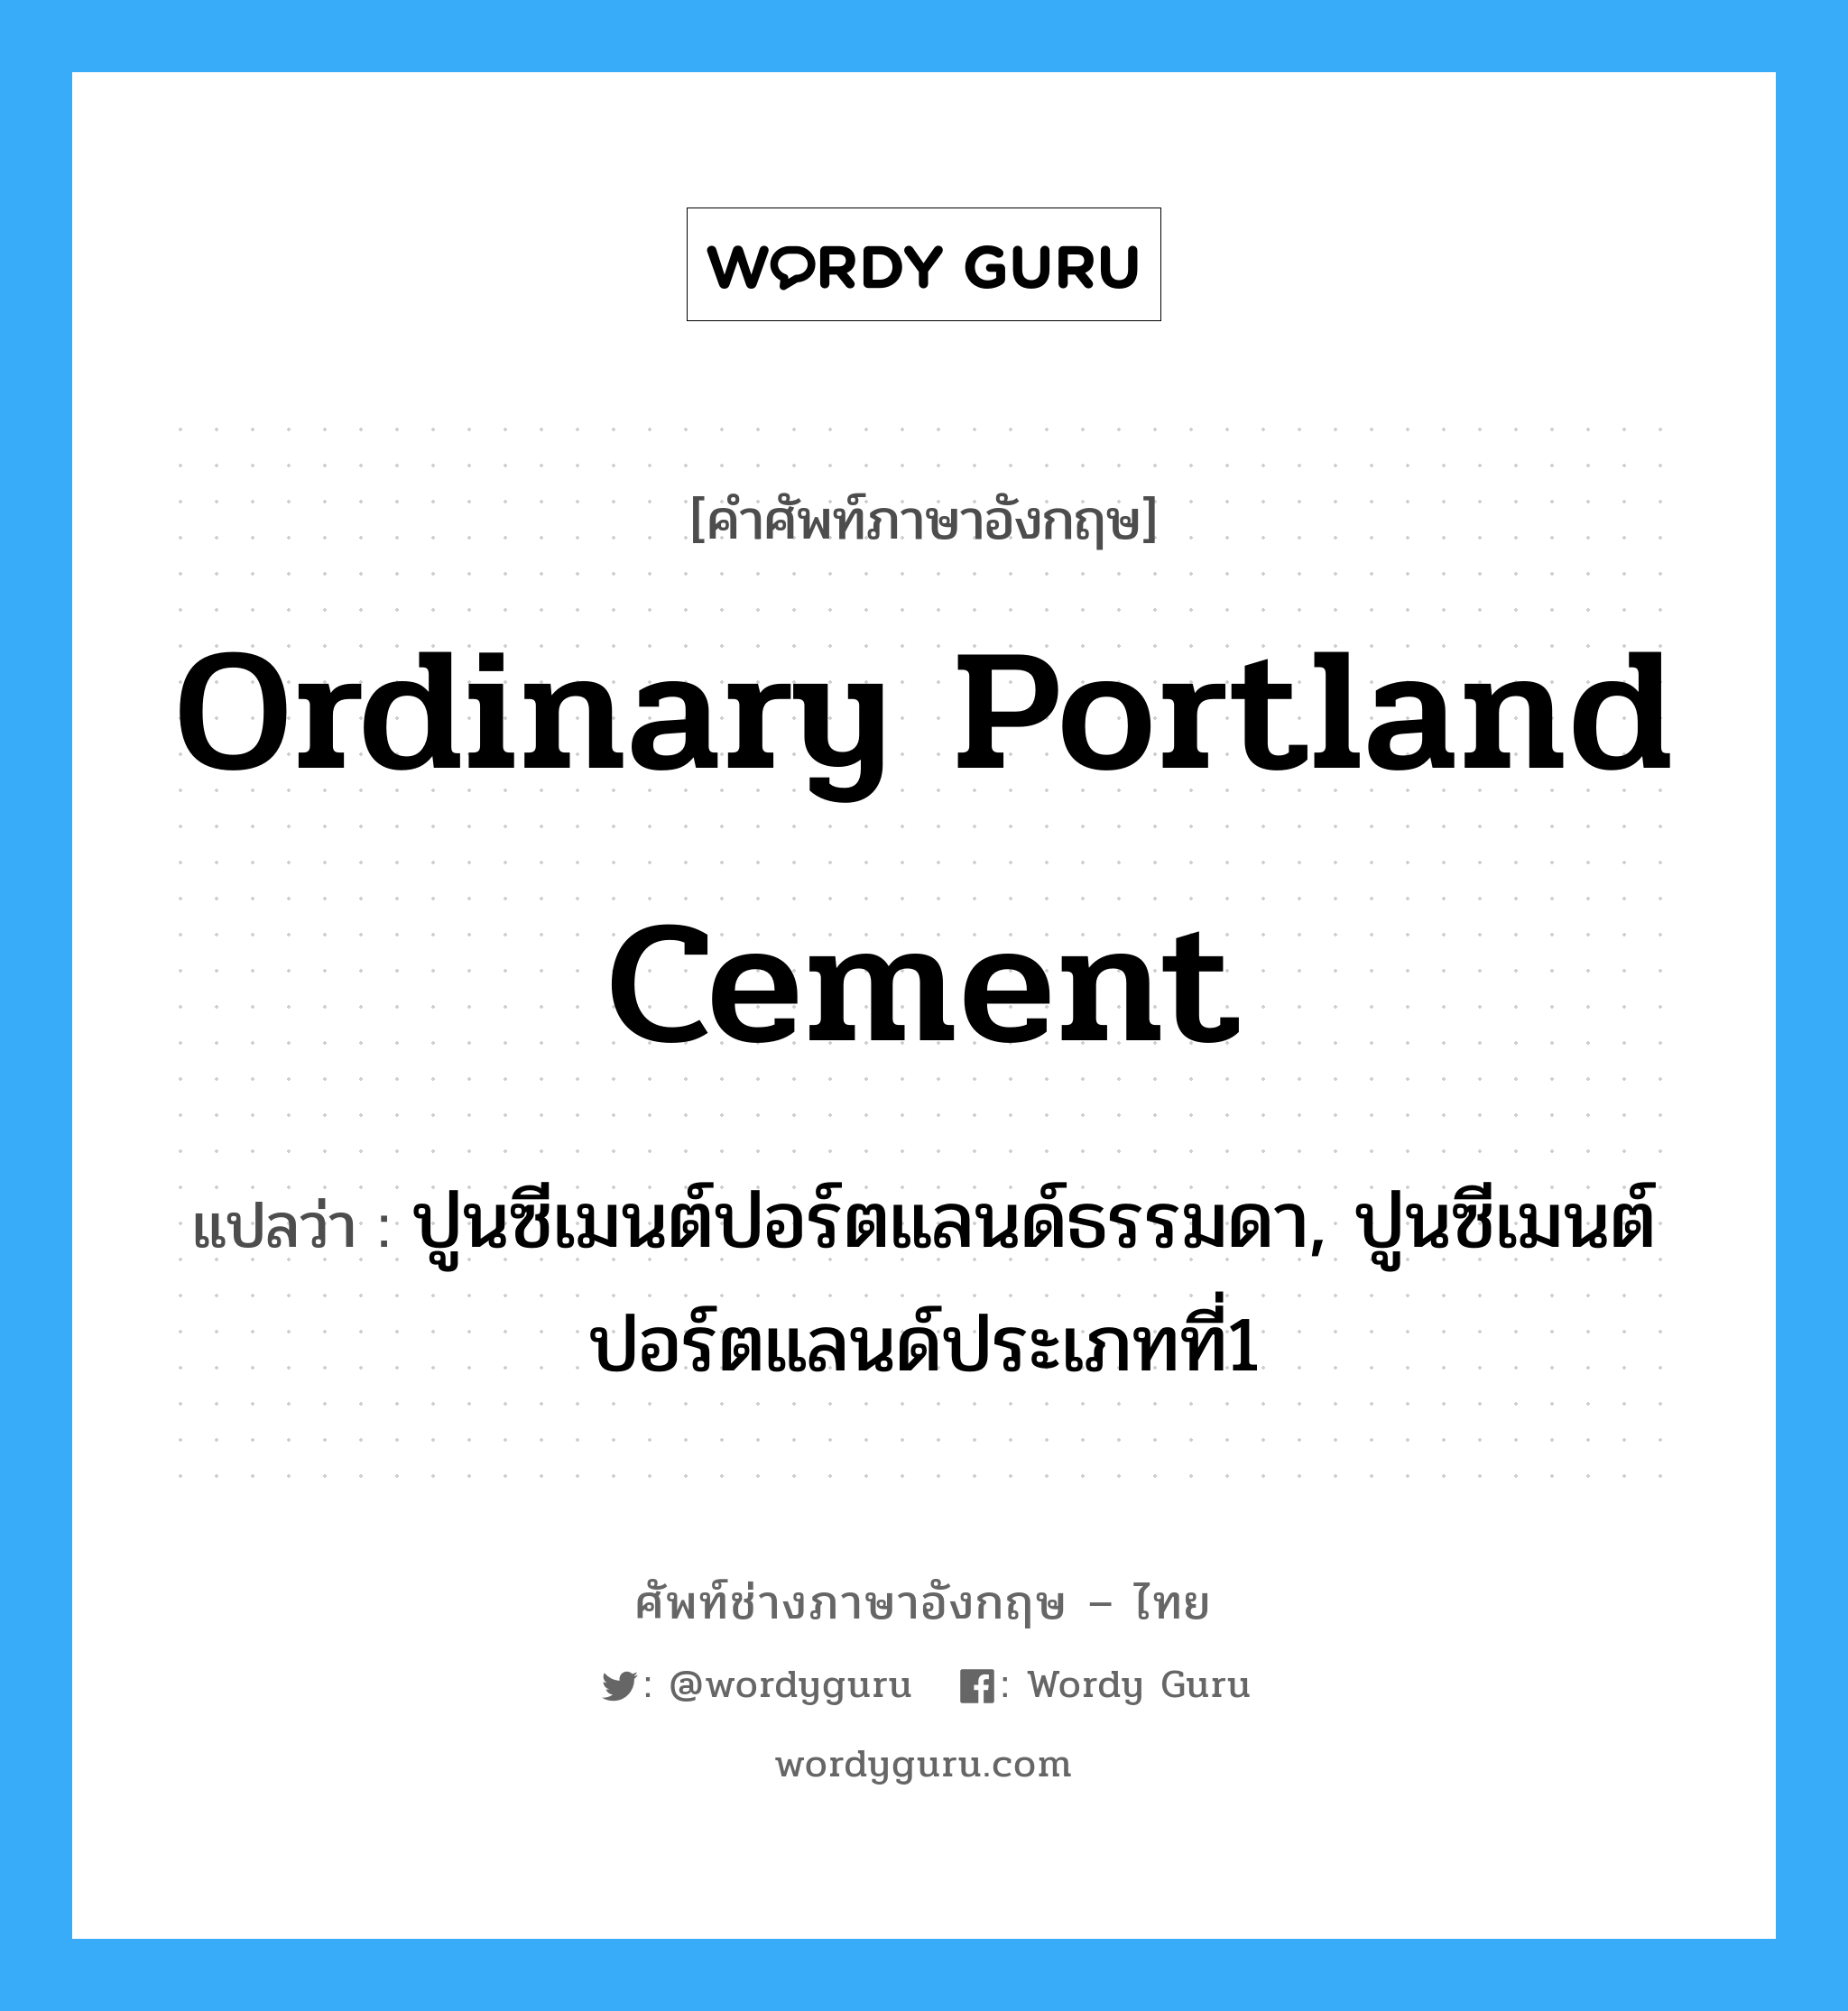 ordinary portland cement แปลว่า?, คำศัพท์ช่างภาษาอังกฤษ - ไทย ordinary portland cement คำศัพท์ภาษาอังกฤษ ordinary portland cement แปลว่า ปูนซีเมนต์ปอร์ตแลนด์ธรรมดา, ปูนซีเมนต์ปอร์ตแลนด์ประเภทที่1